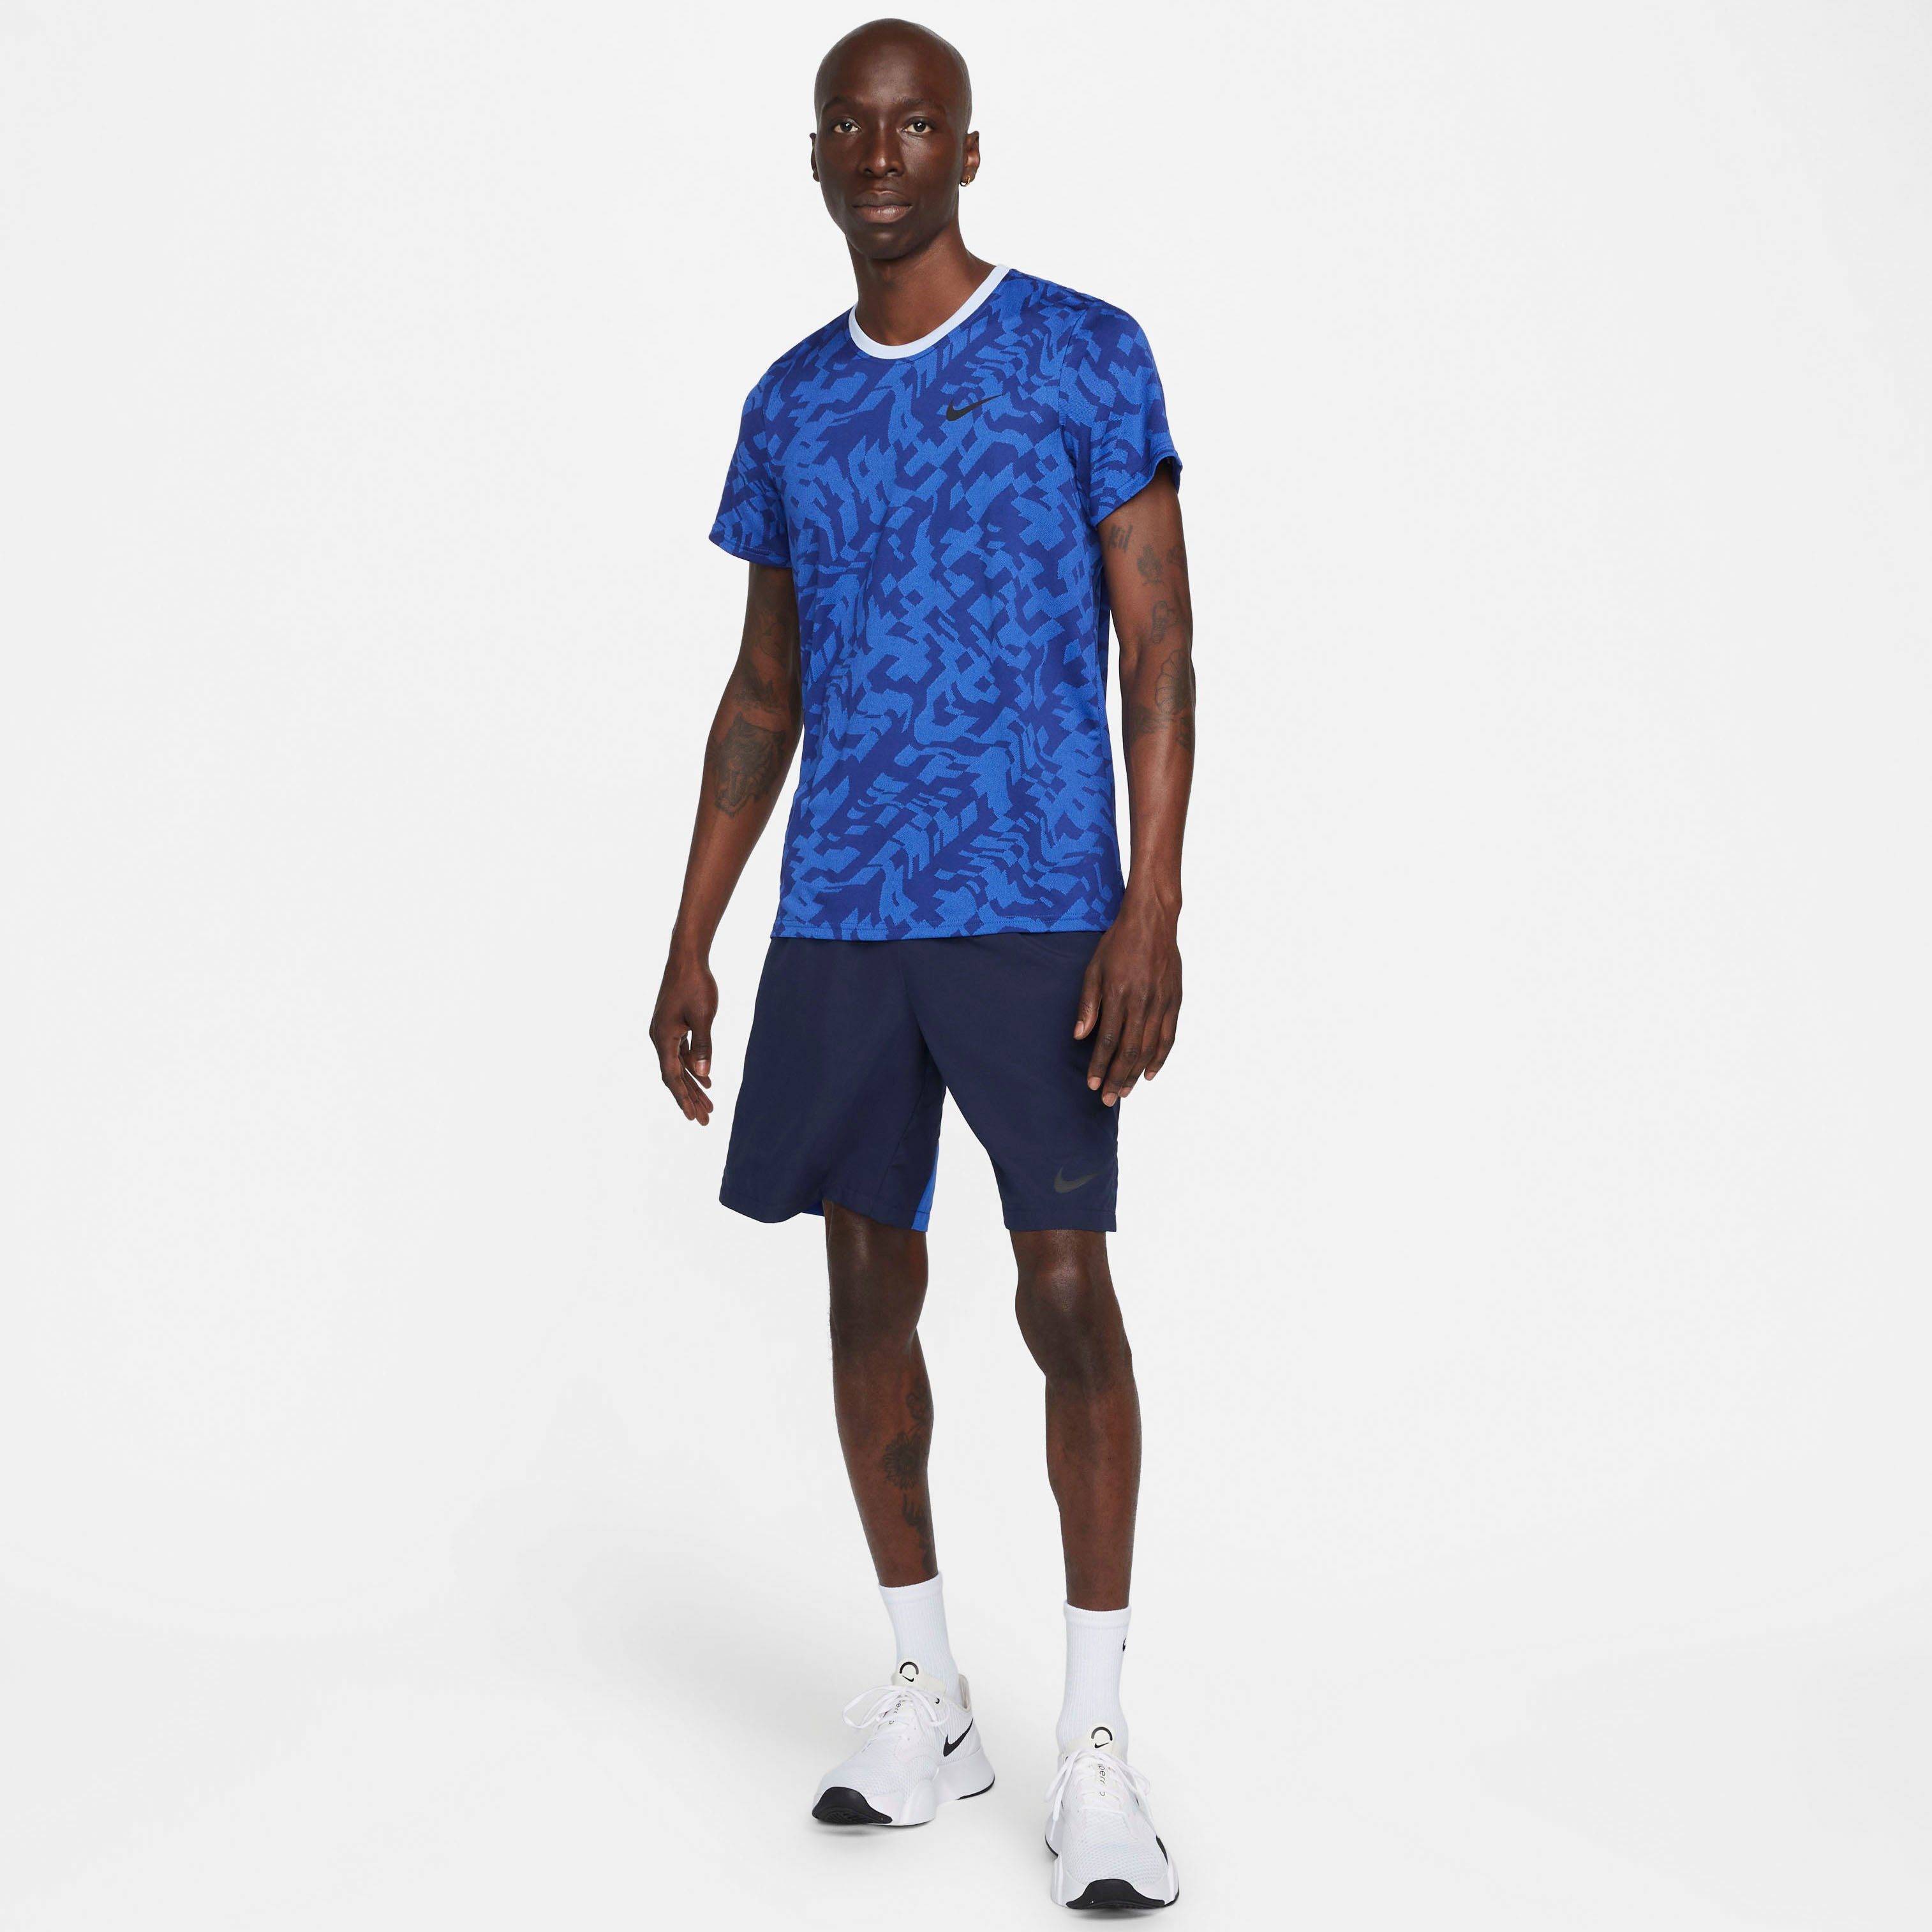 Nike Shorts " Woven Training Men's Shorts Dri-FIT OBSIDIAN/GAME ROYAL/BLACK